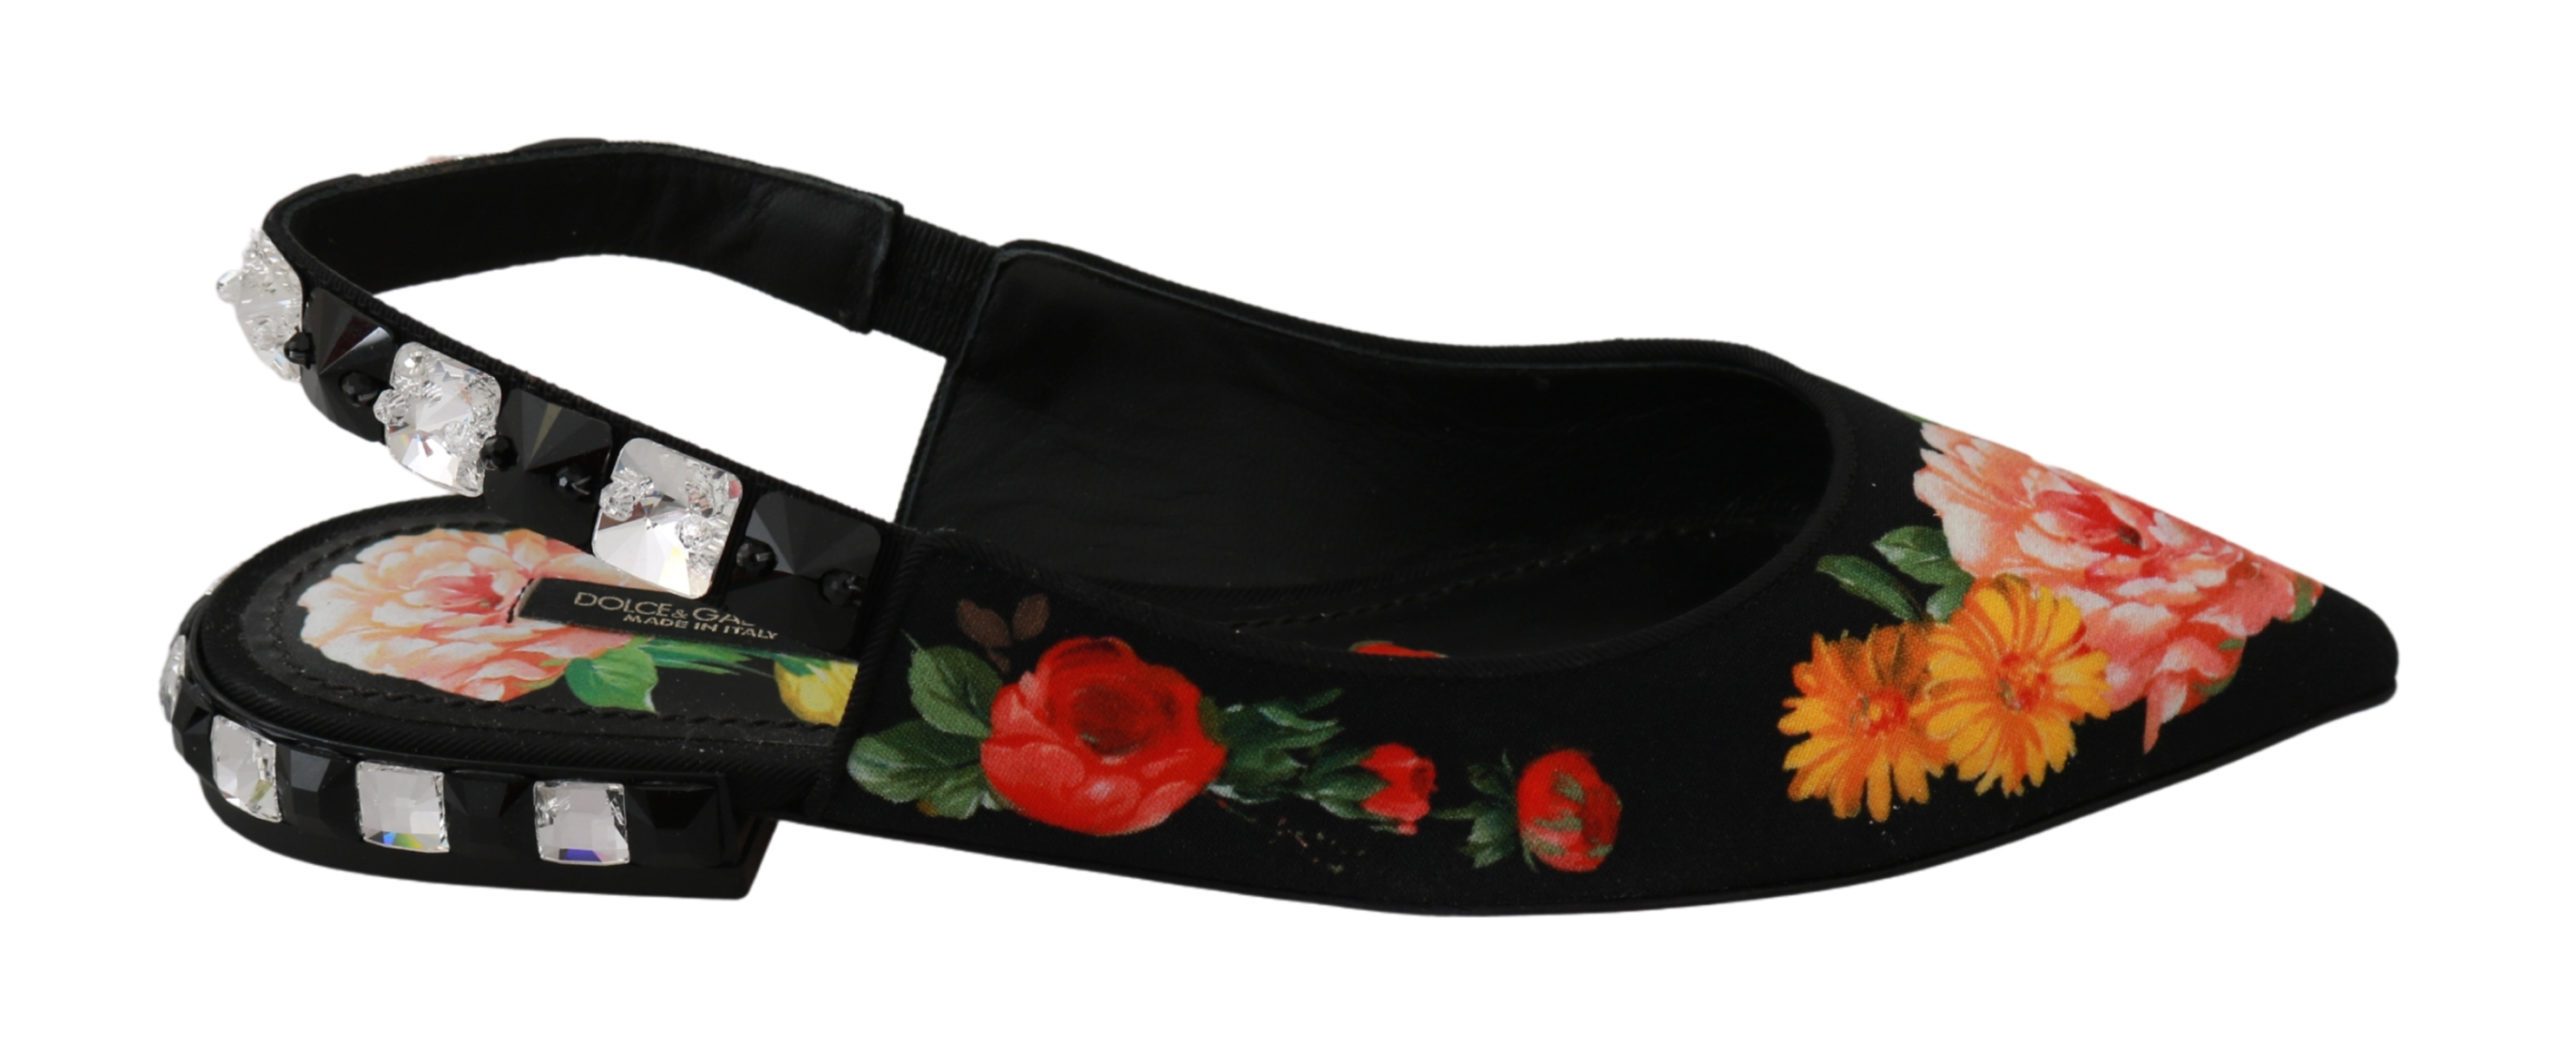 Black Floral Crystal Slingbacks Sandals Shoes - EU35/US4.5